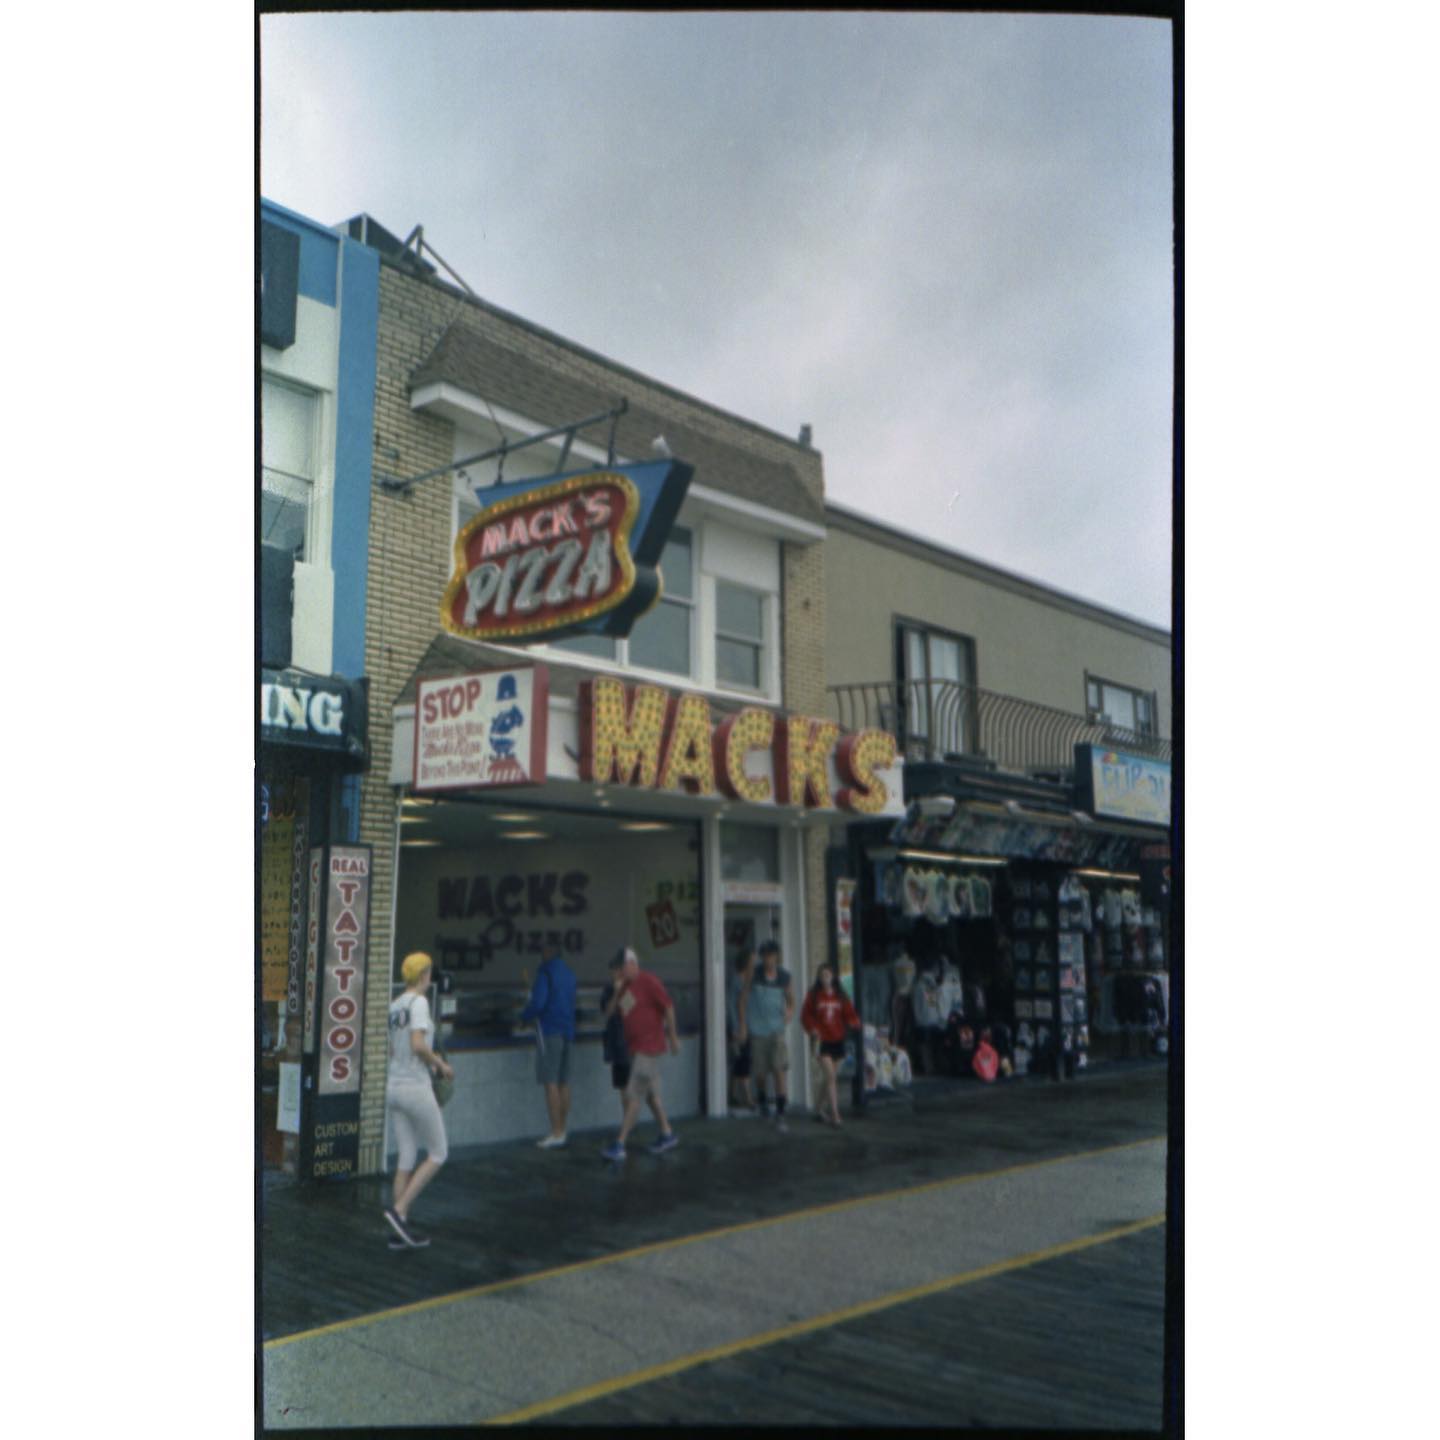 Mackâs Pizza

#olympusxa #agfacolor #film #filmphotography #staybrokeshootfilm #boardwalk #wildwood